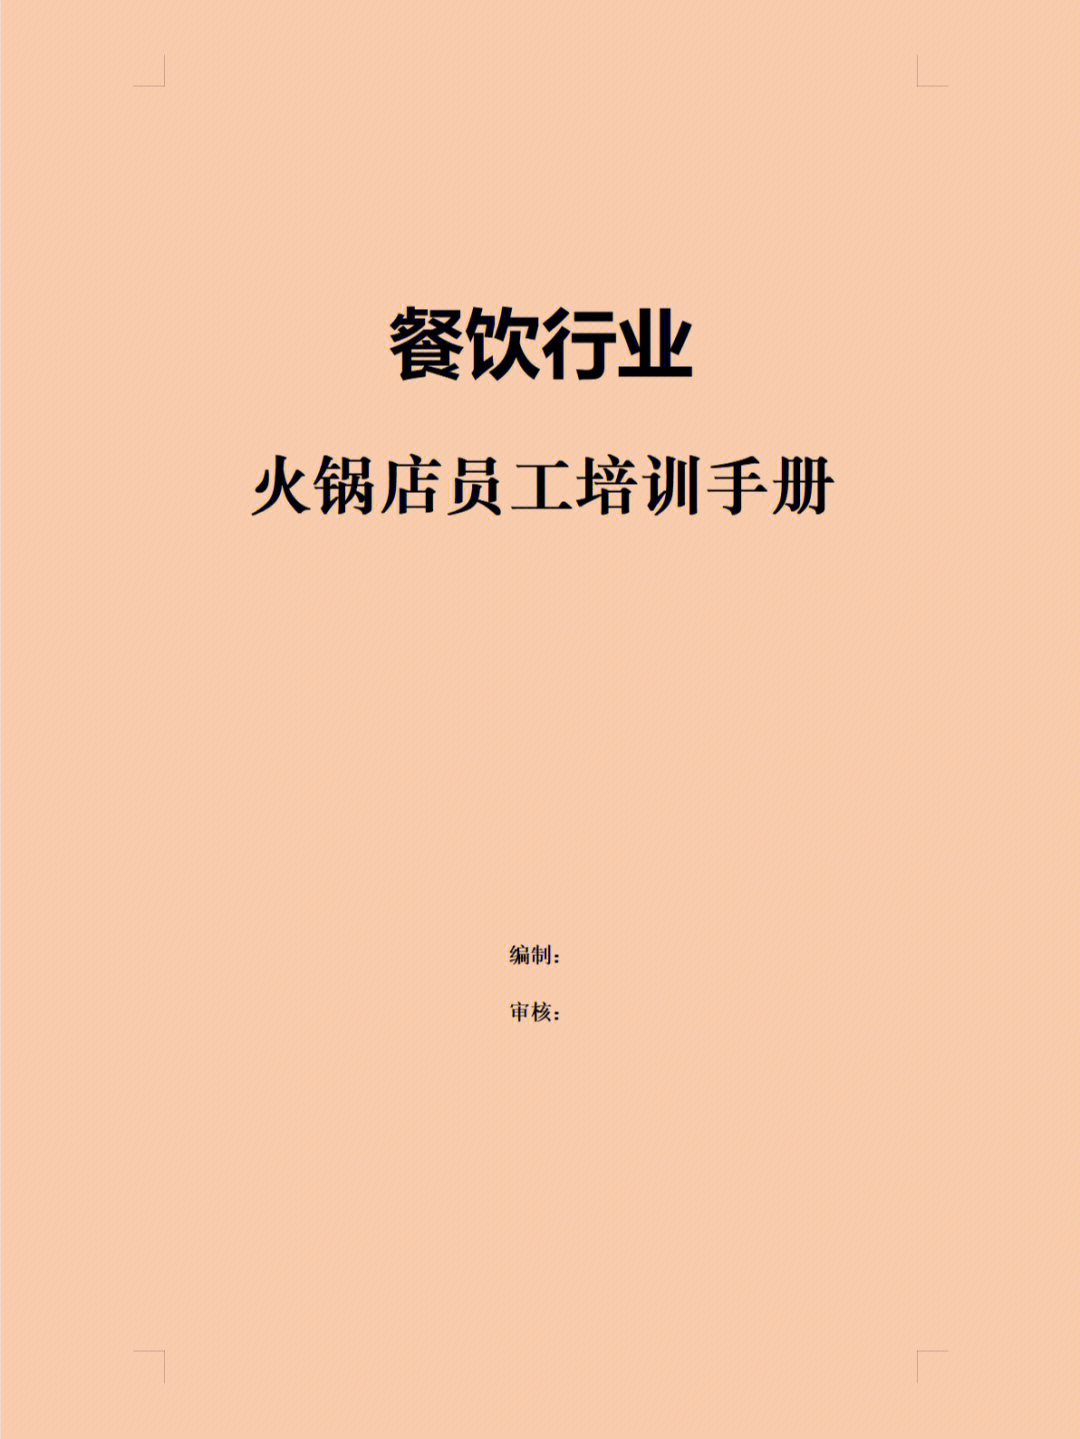 餐饮行业火锅店员工培训手册共49页